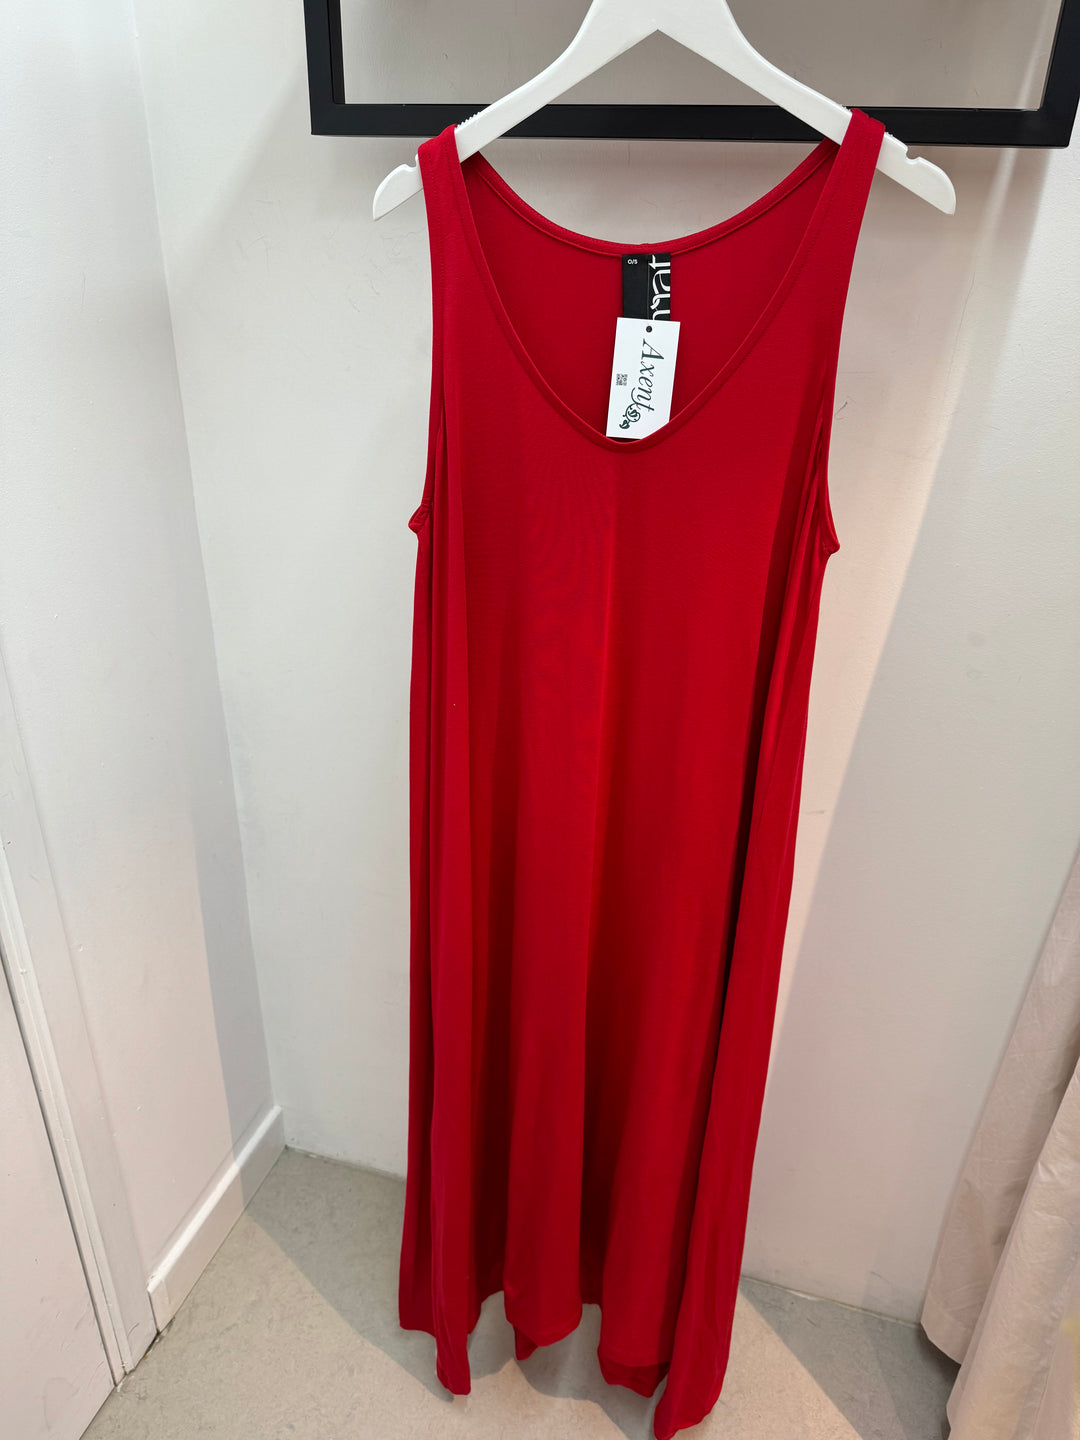 rode zomerse jurk - mat fashion - 0000.7502.C -red - grote maten - dameskleding - kledingwinkel - herent - leuven